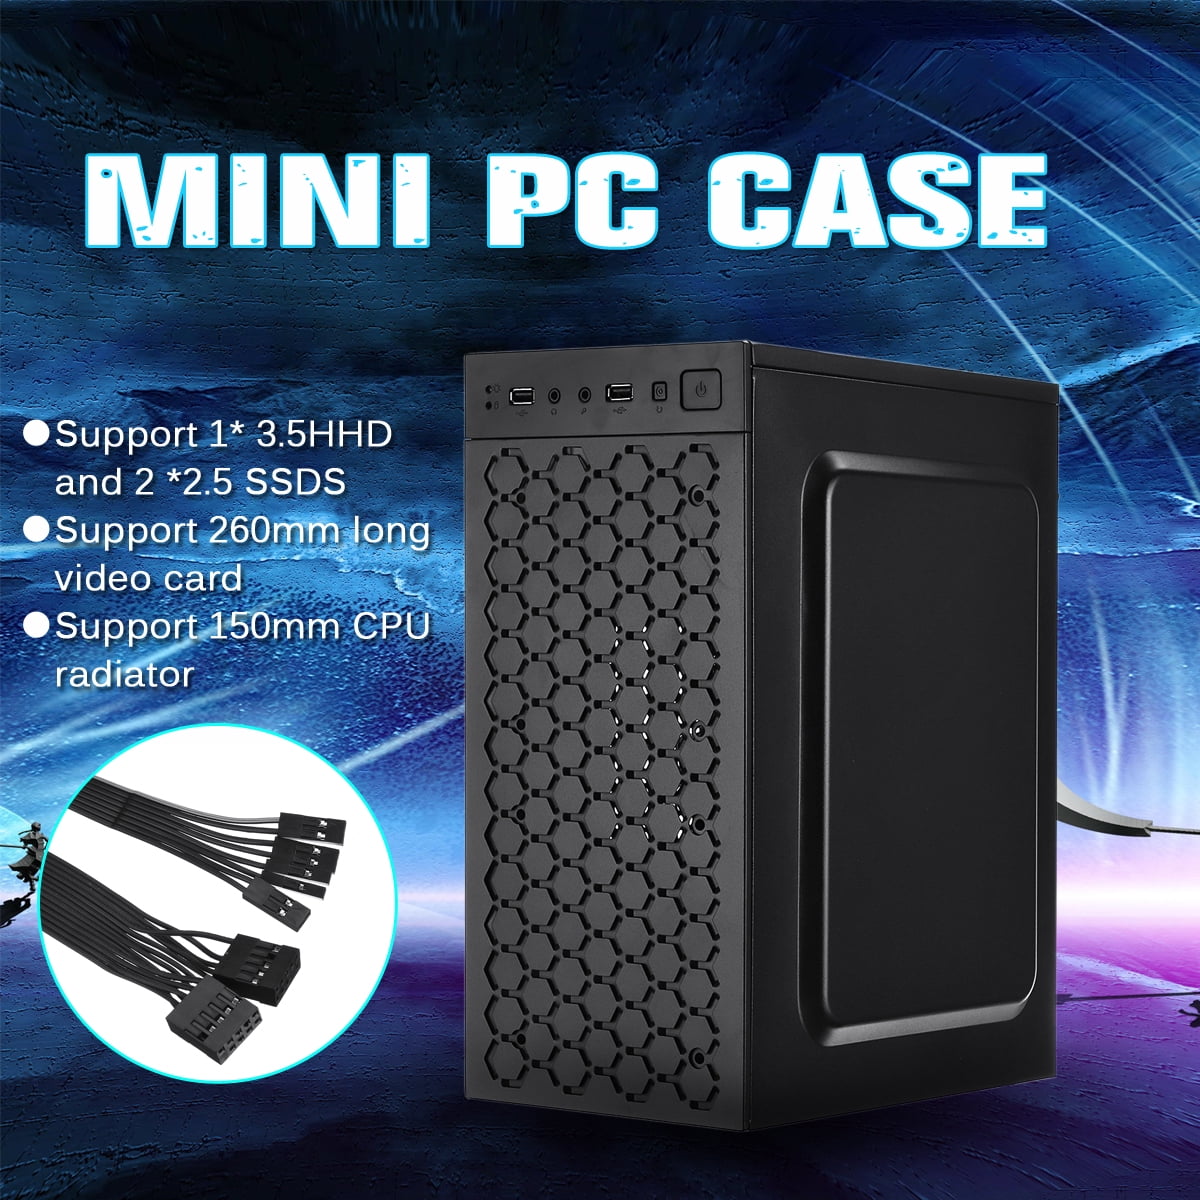 mini pc case computer accessories micro-ATX USB 2.0 | Walmart Canada